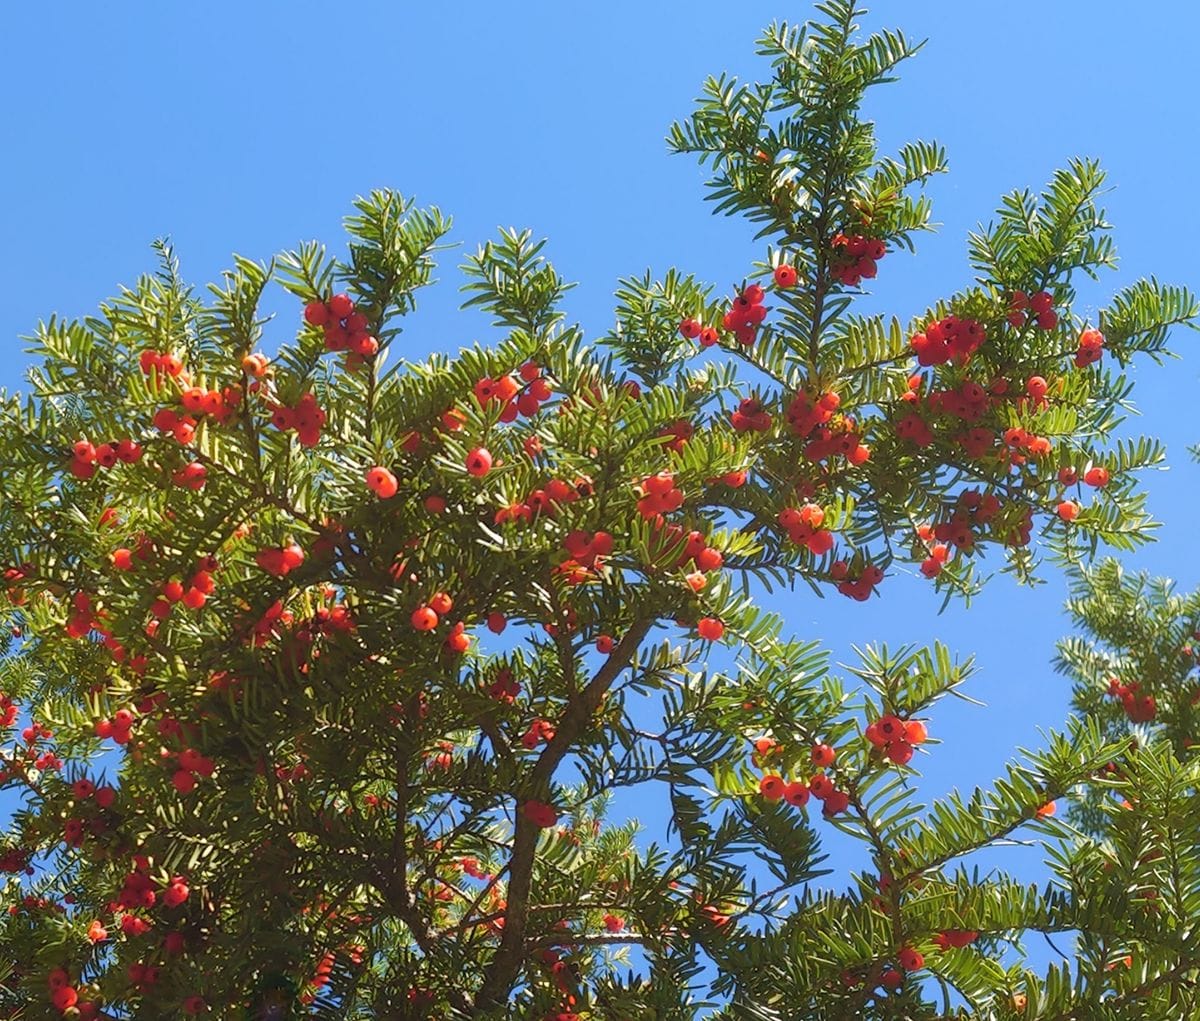 長野県で見かけたこの木は何というのでしょう 赤い実 花 園芸相談q A みんなの趣味の園芸